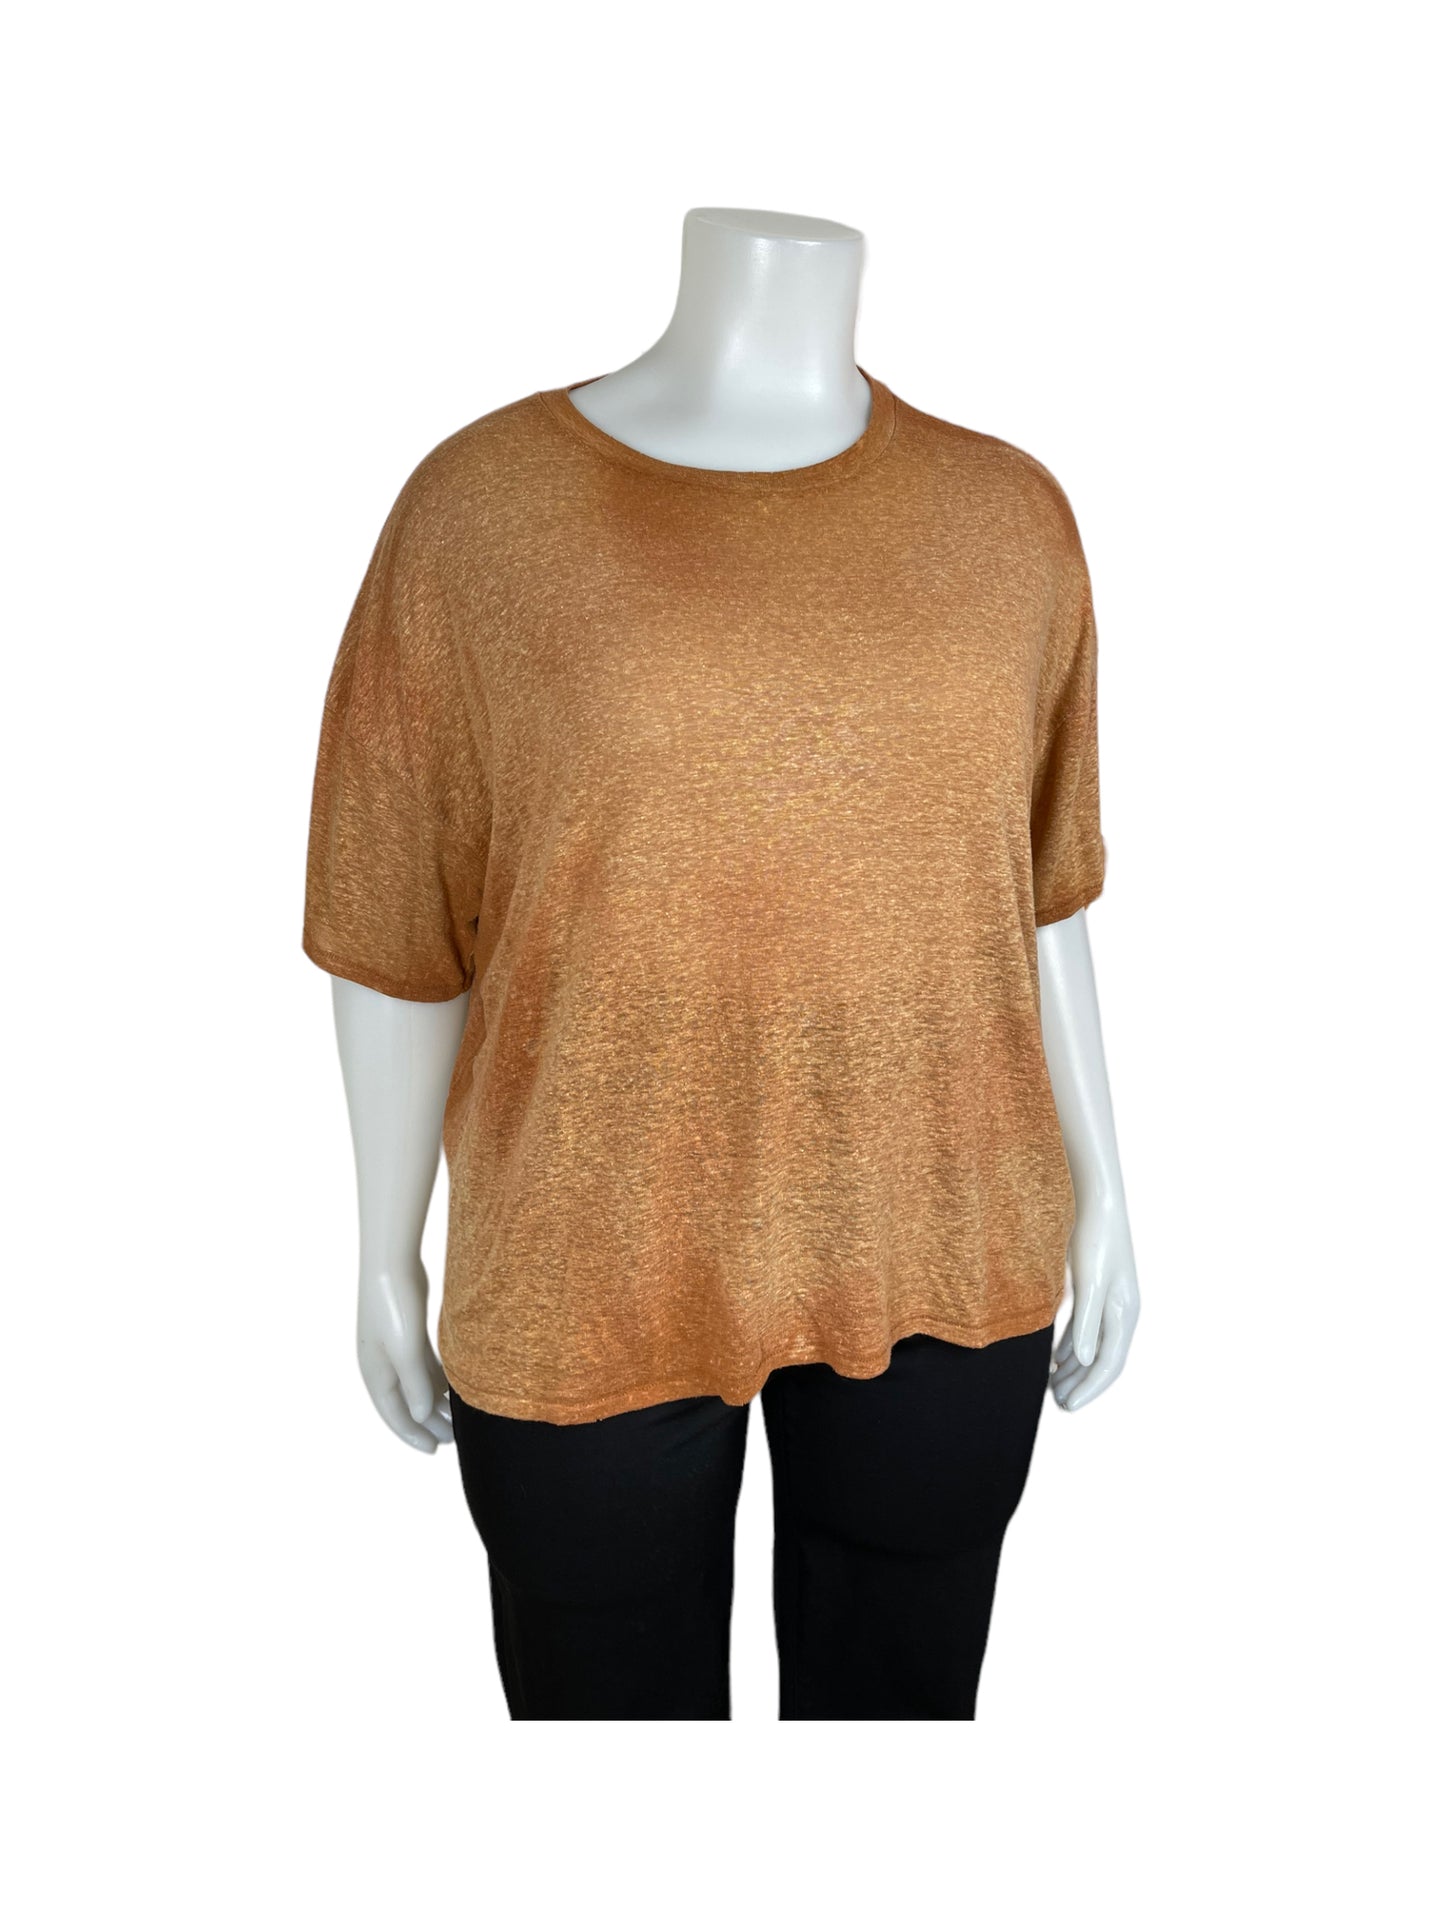 “Aerie” Orange T-Shirt (XL)